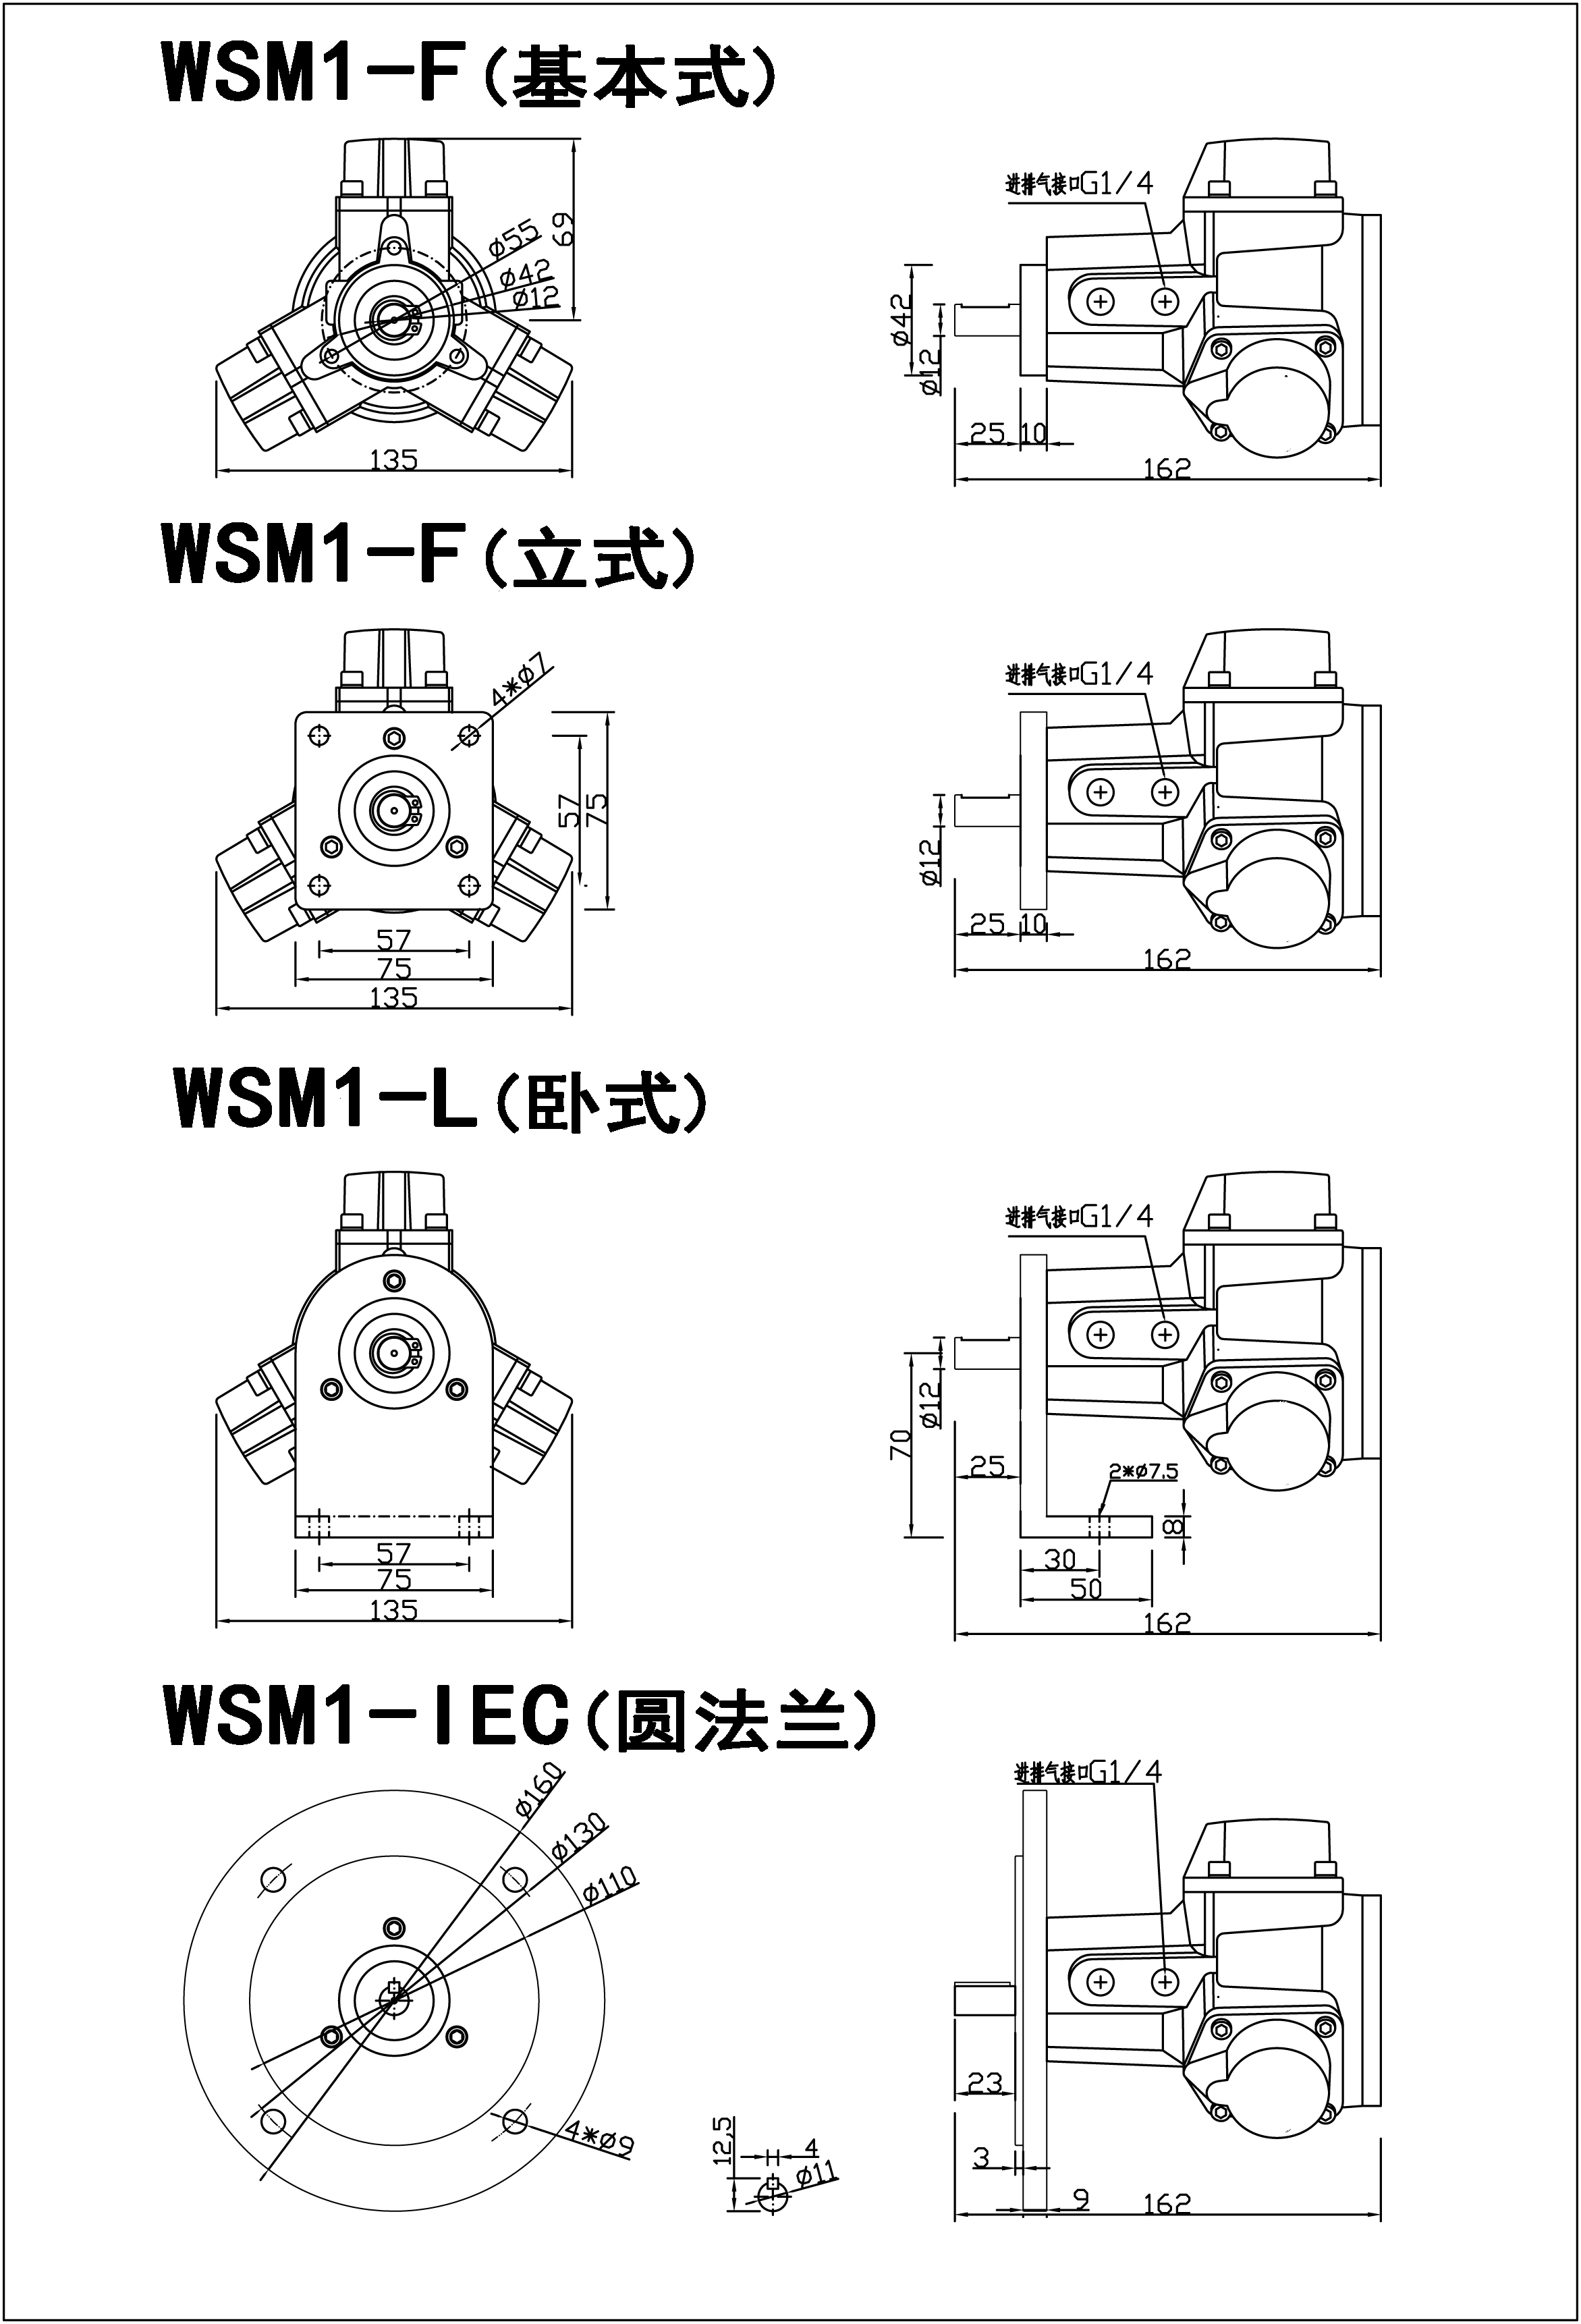 东莞市沃思三缸微型活塞式气动马达M1系列厂家沃思微型活塞式气动马达M1系列 沃思三缸微型活塞式气动马达M1系列